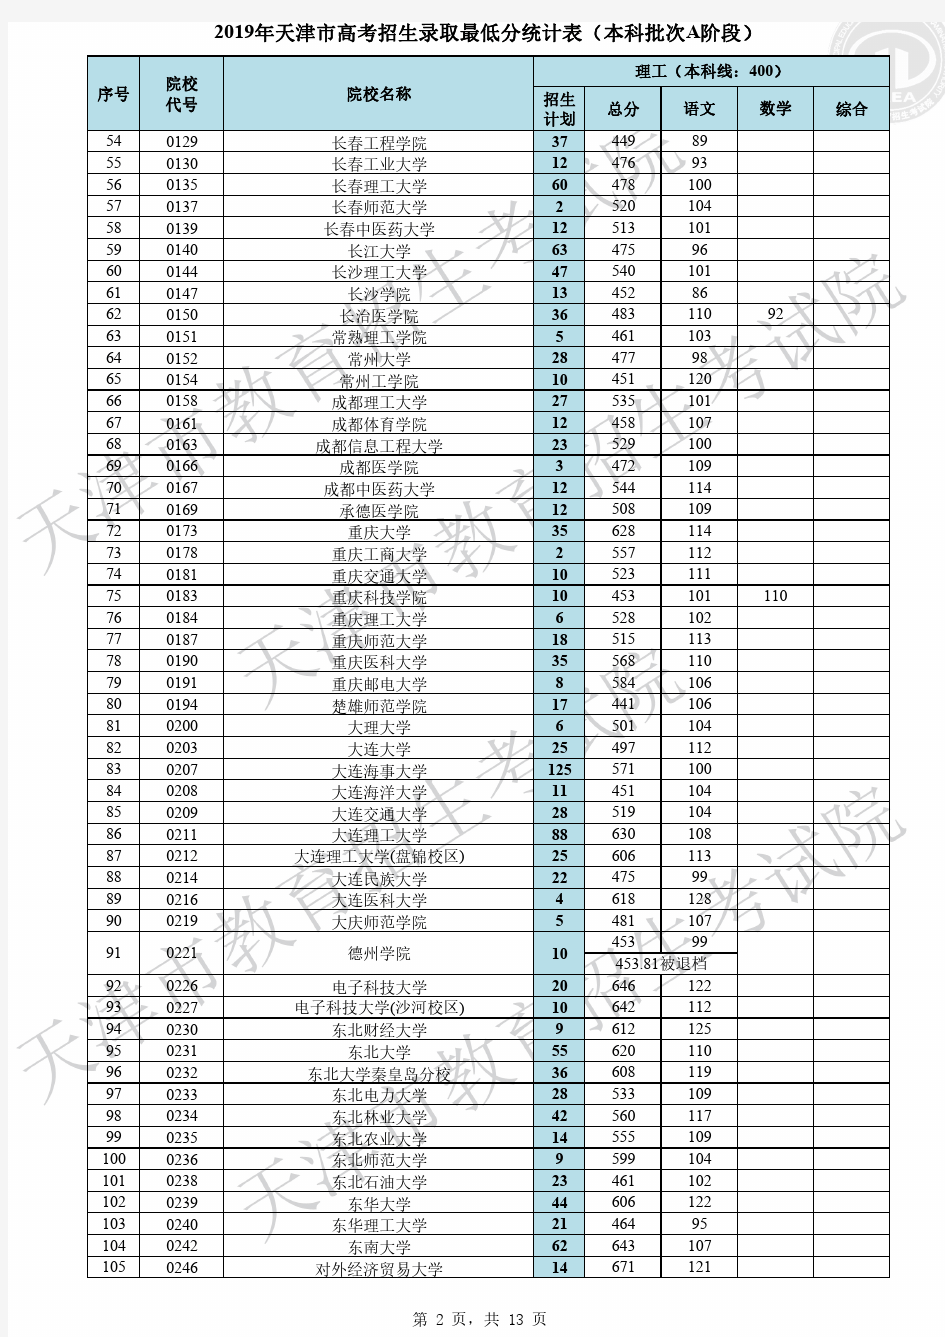 2019年天津市高考招生录取最低分统计表(本科批次A阶段)